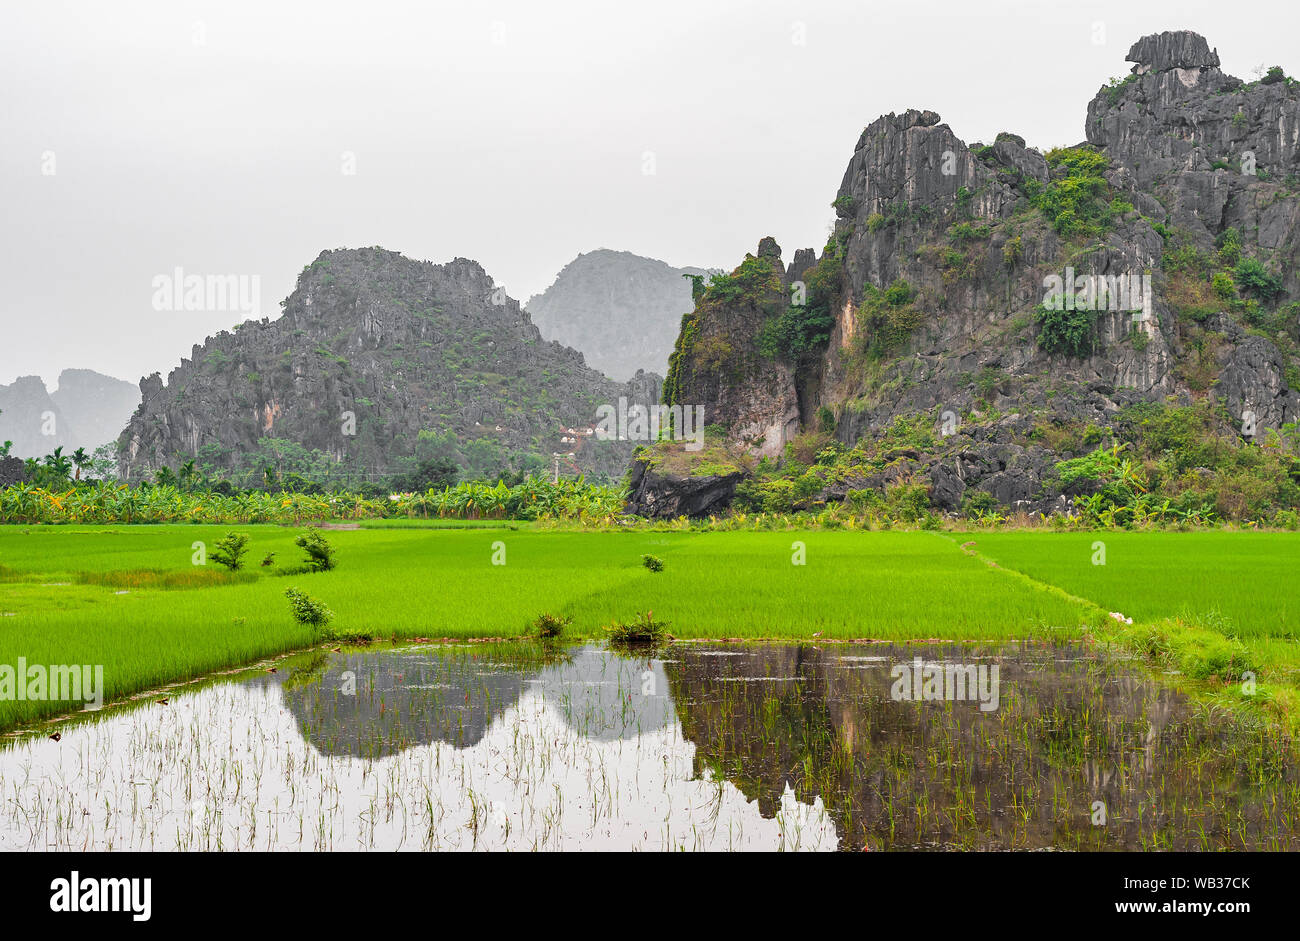 Los majestuosos campos de agricultura de arrozales de Hoa Binh en entre el geológico karst formaciones rocosas cerca de Hanoi, Vietnam del Norte. Foto de stock